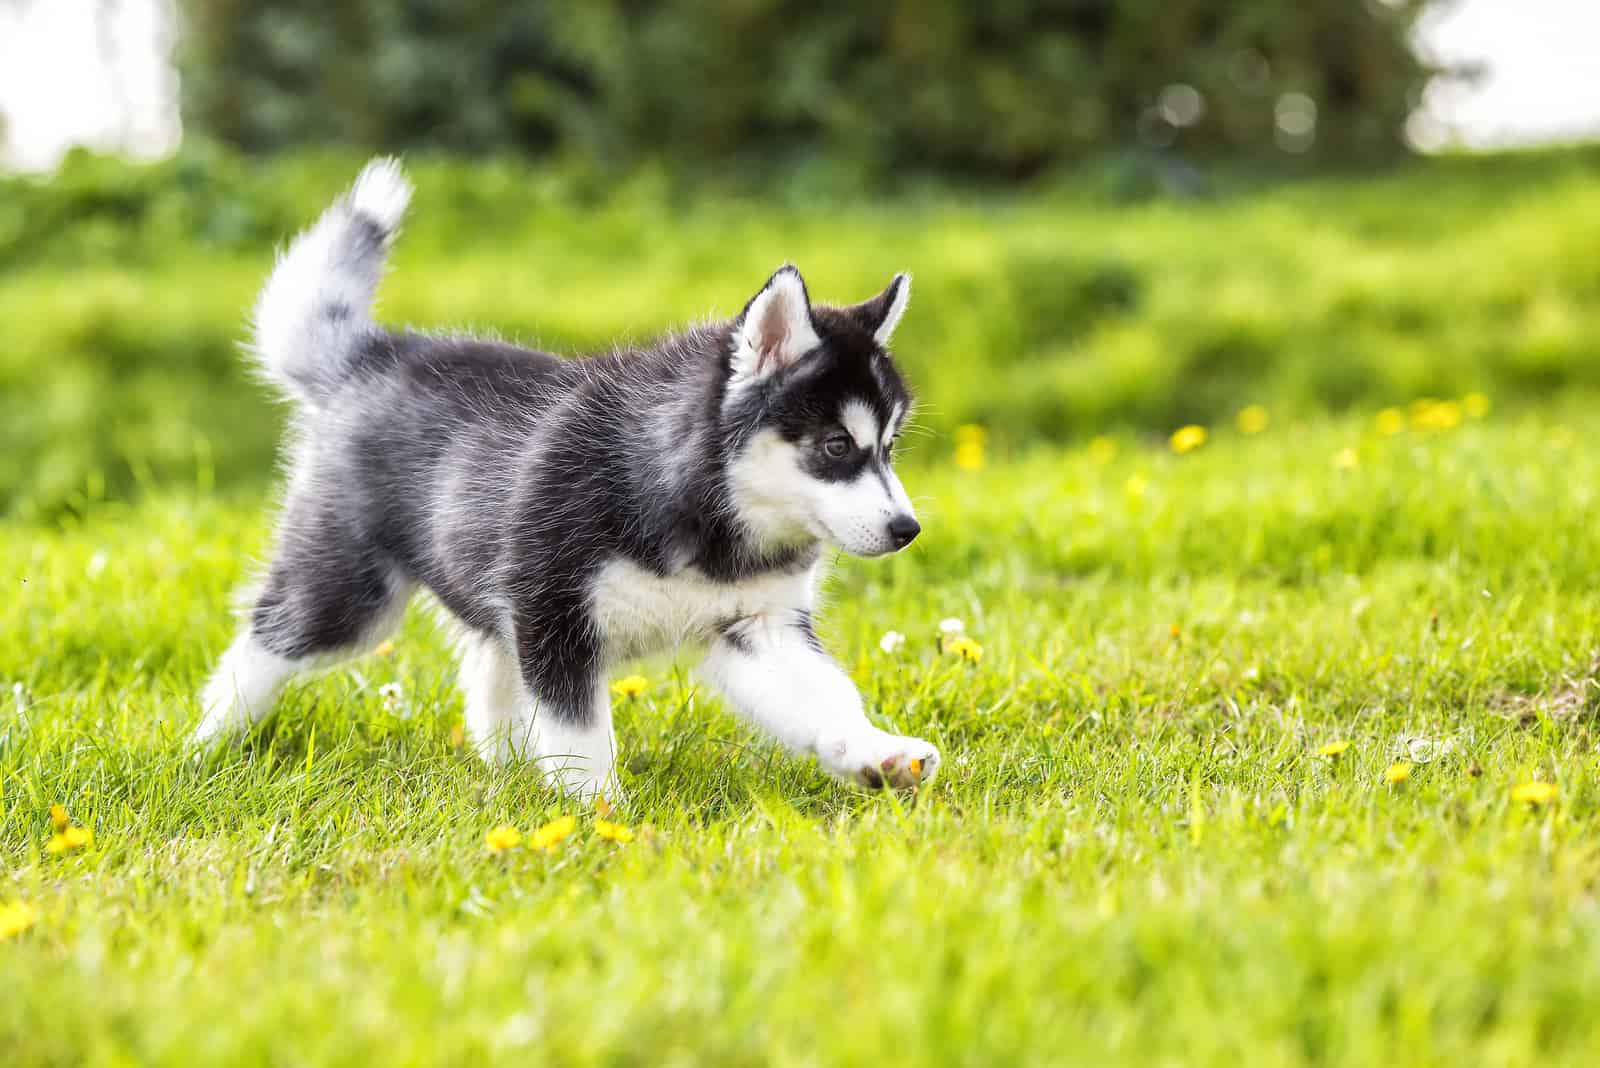 Husky Puppy walking on grass outside